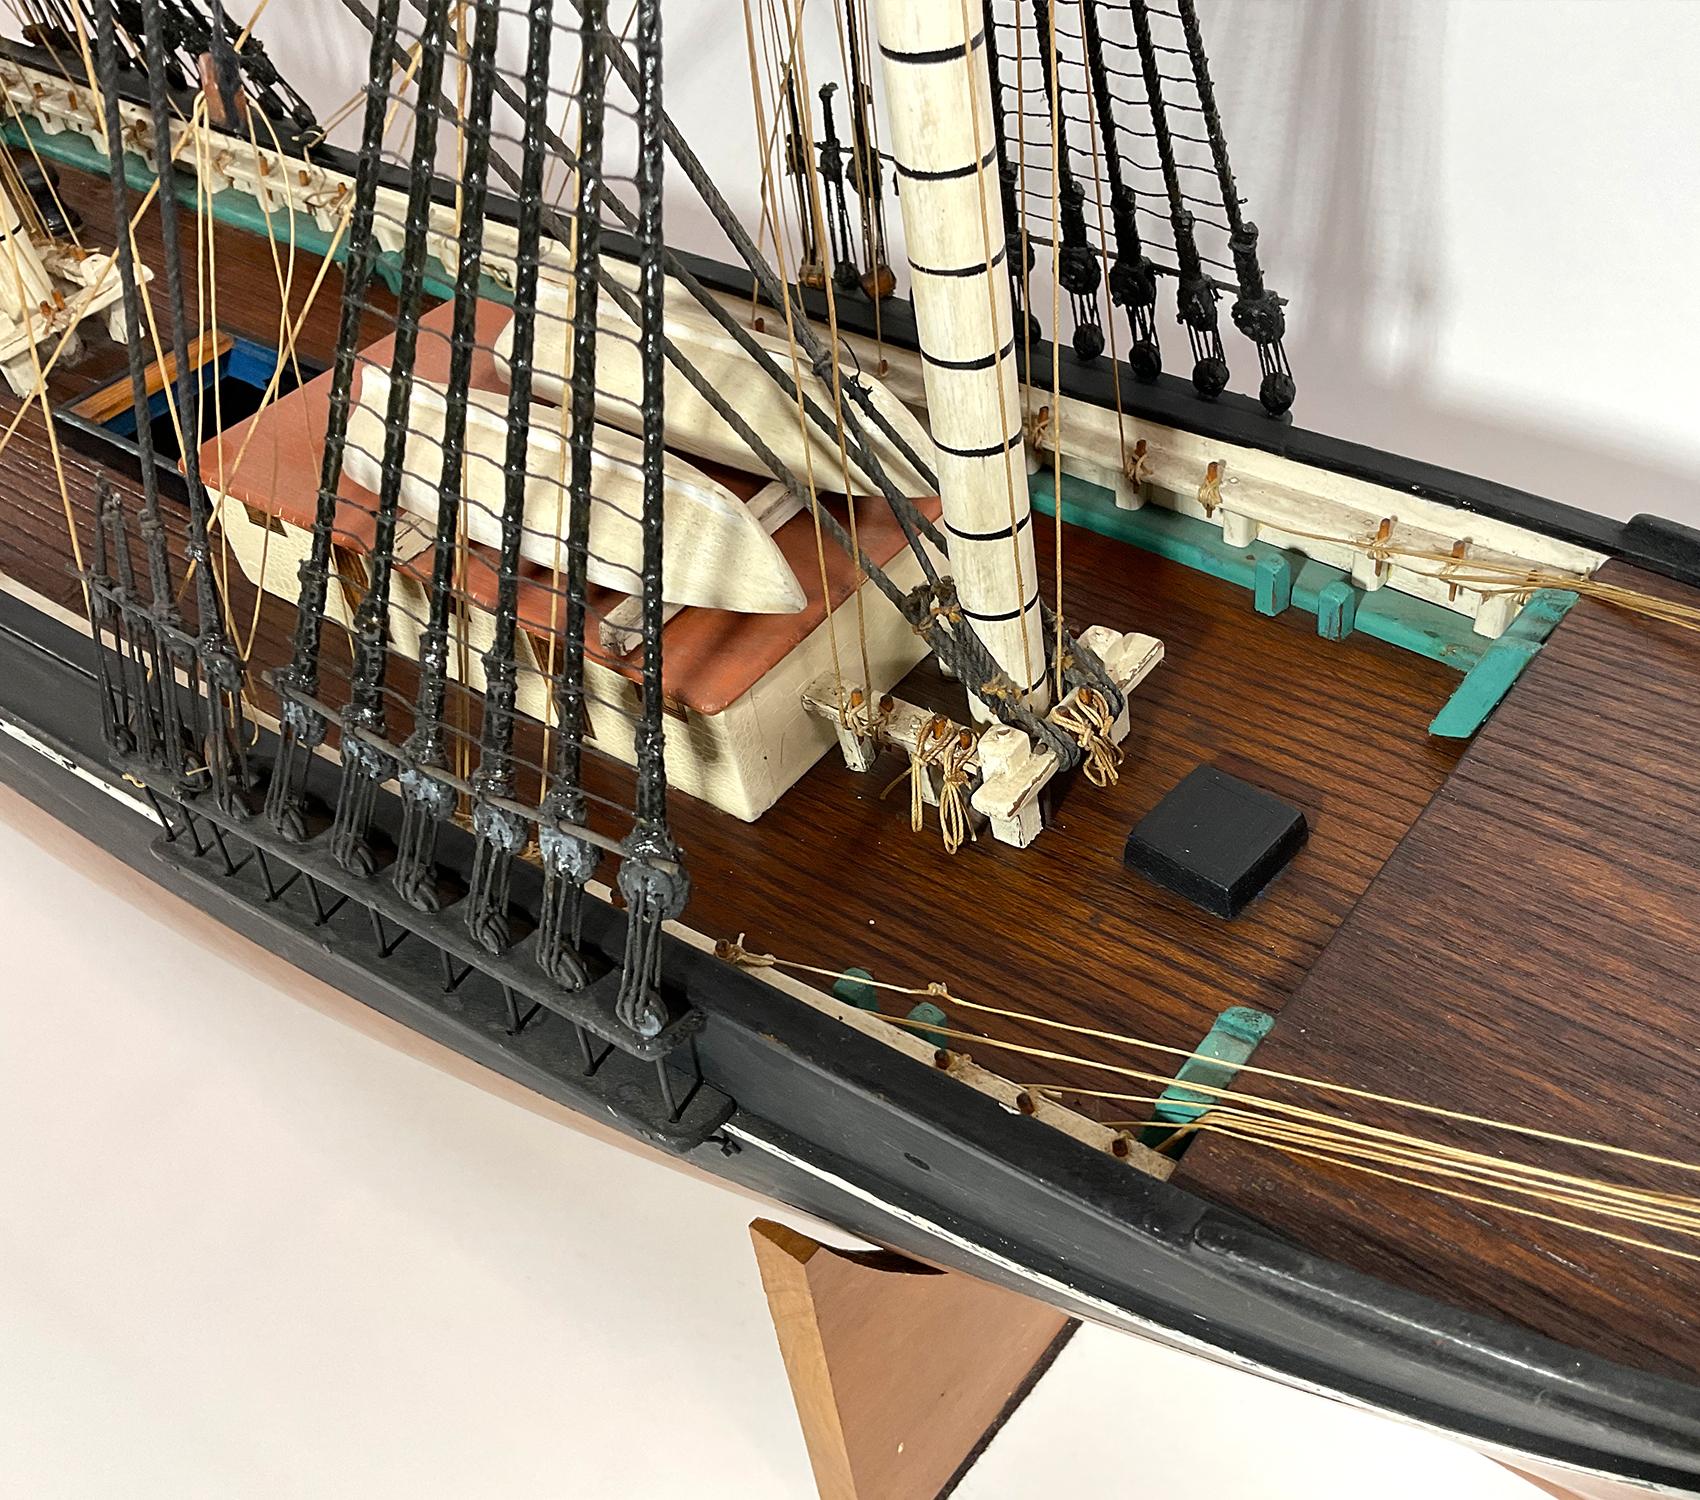 Antique Ships Model 